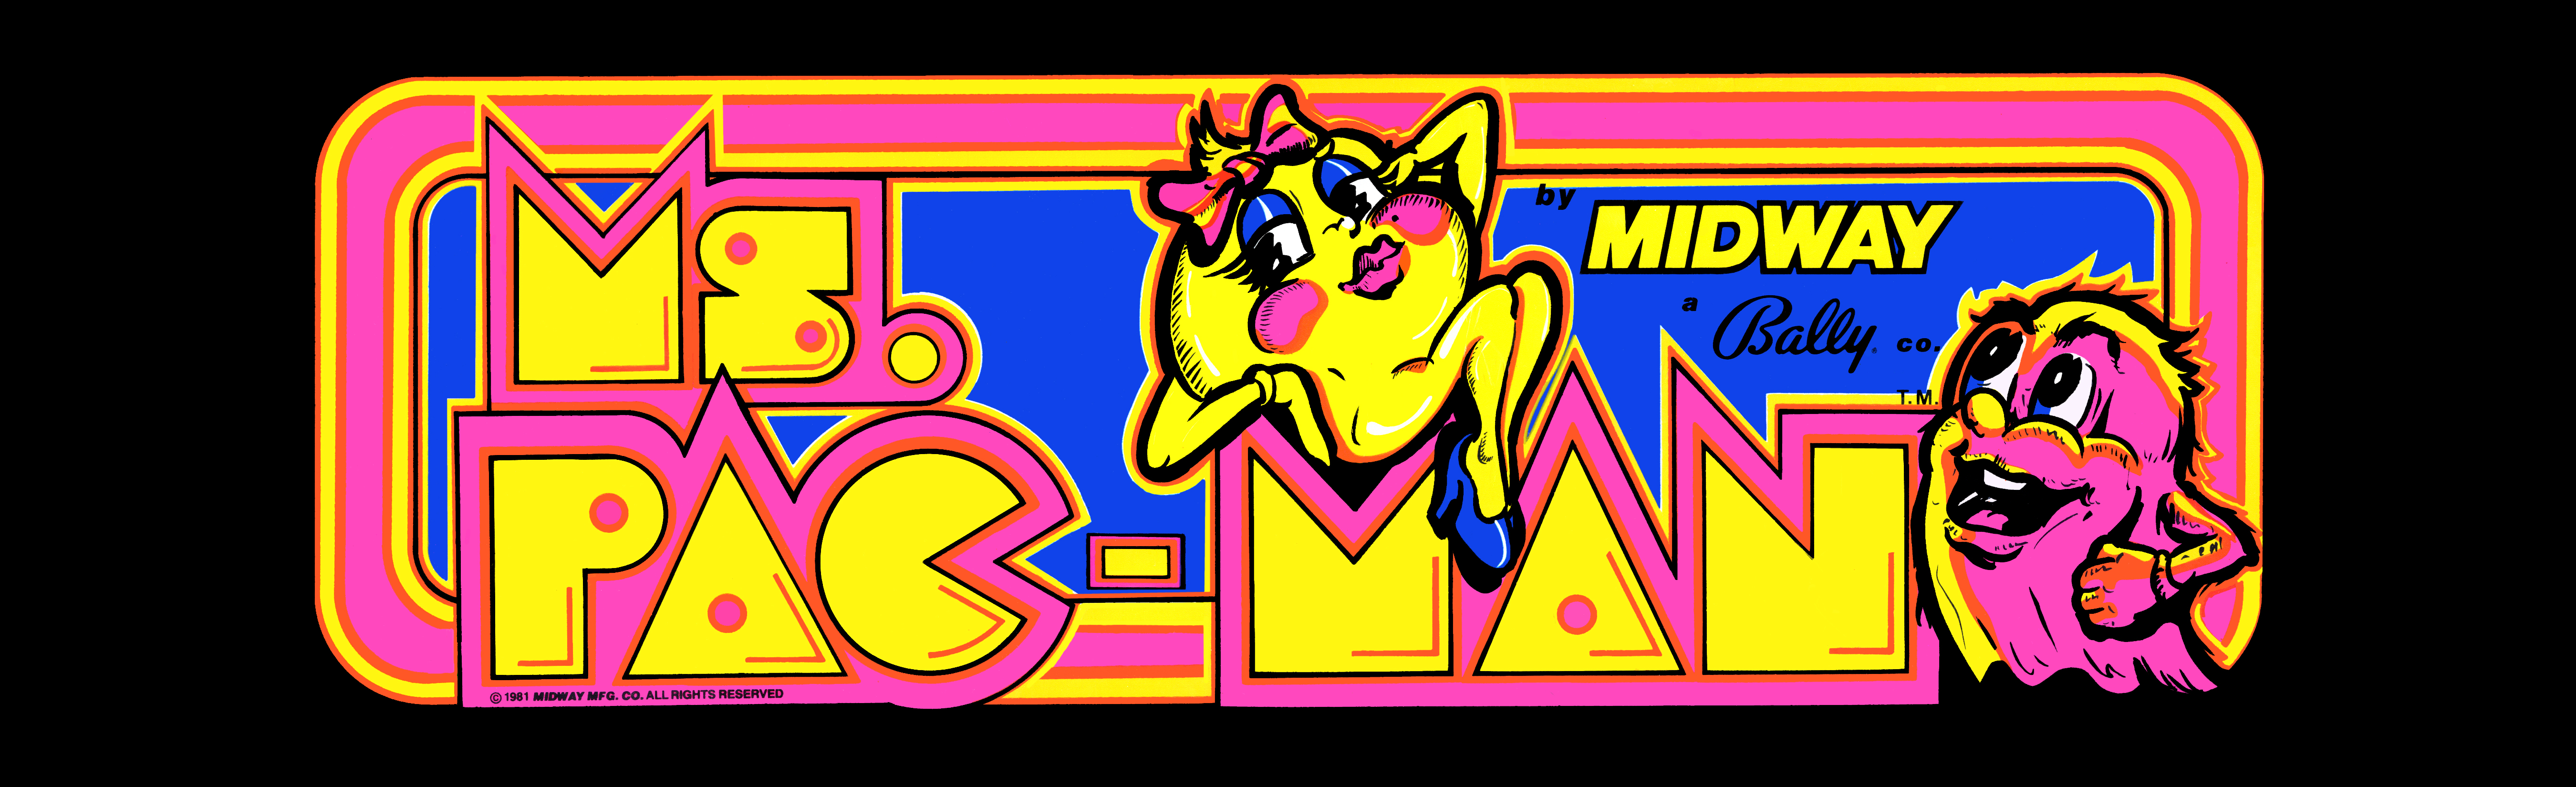 Ms Pac Man Arcade Marquee - HD Wallpaper 